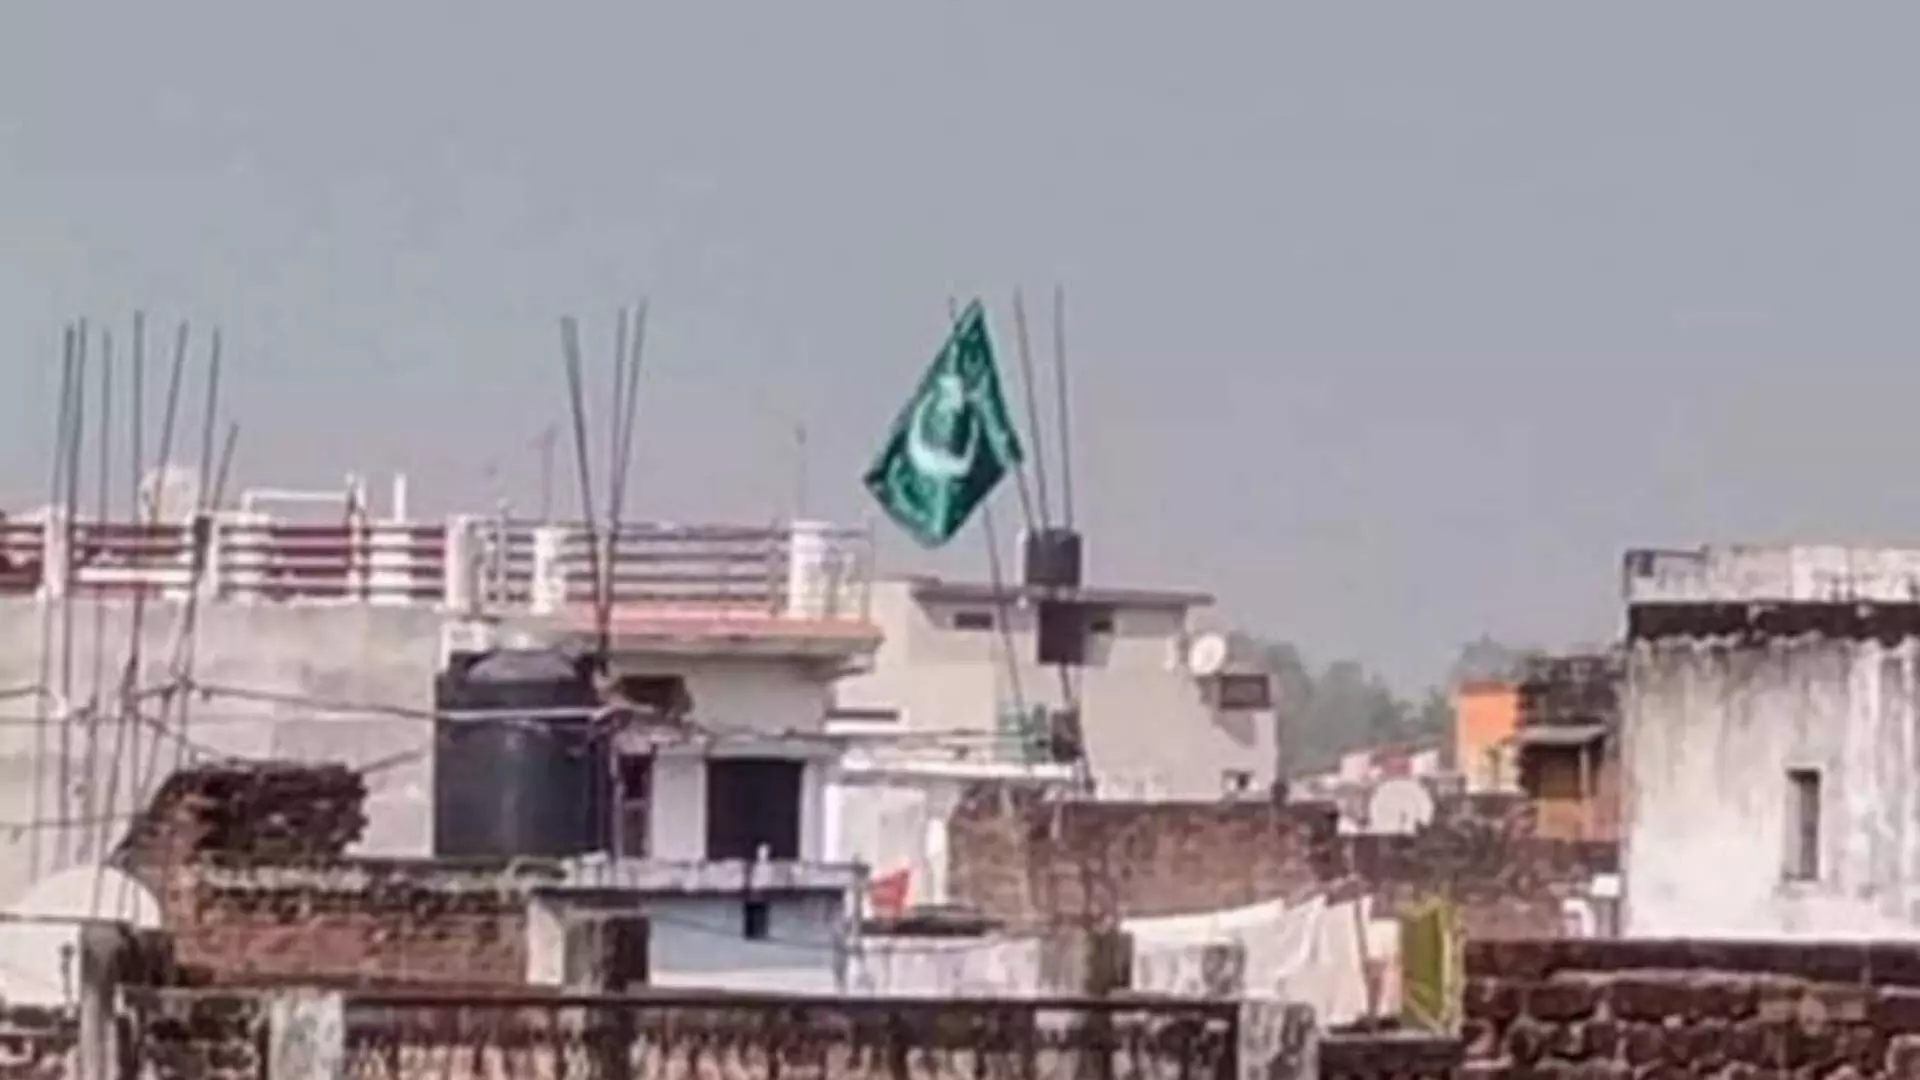 Fact Check: गोरखपूरमधील घरावर पाकिस्तानी झेंडा फडकवल्याचं वृत्त खरं आहे का?